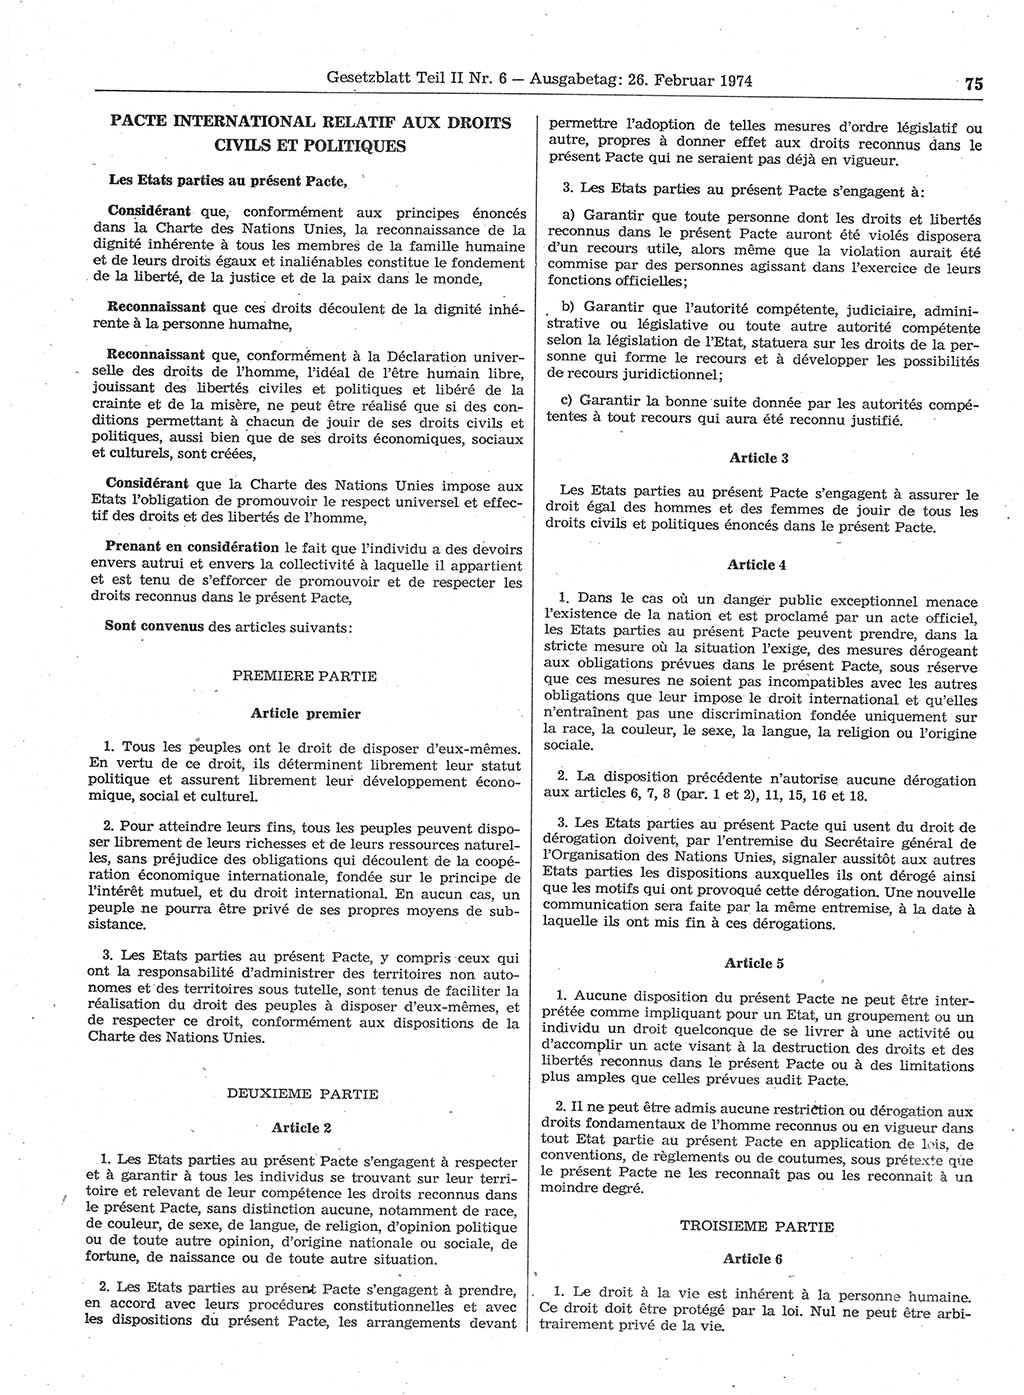 Gesetzblatt (GBl.) der Deutschen Demokratischen Republik (DDR) Teil ⅠⅠ 1974, Seite 75 (GBl. DDR ⅠⅠ 1974, S. 75)